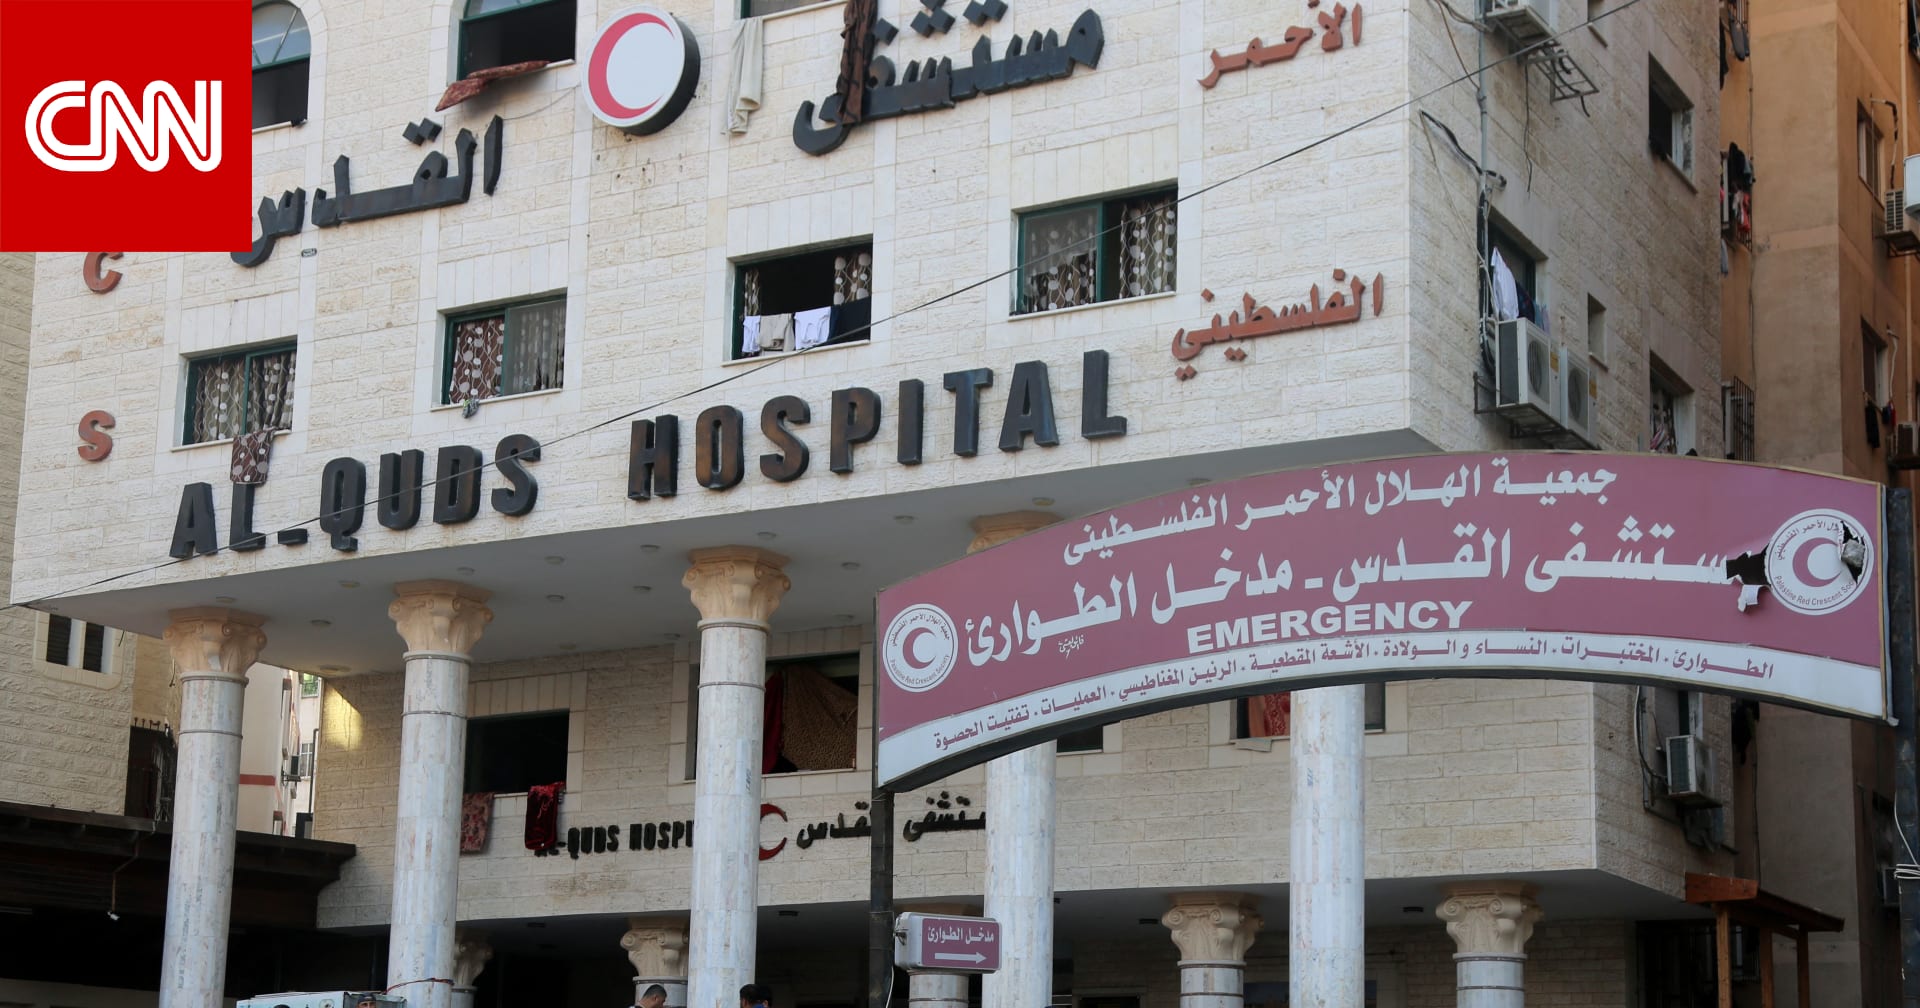 وزارة الصحة الفلسطينية تعلن فقدها الاتصال مع مستشفيات شمال غزة